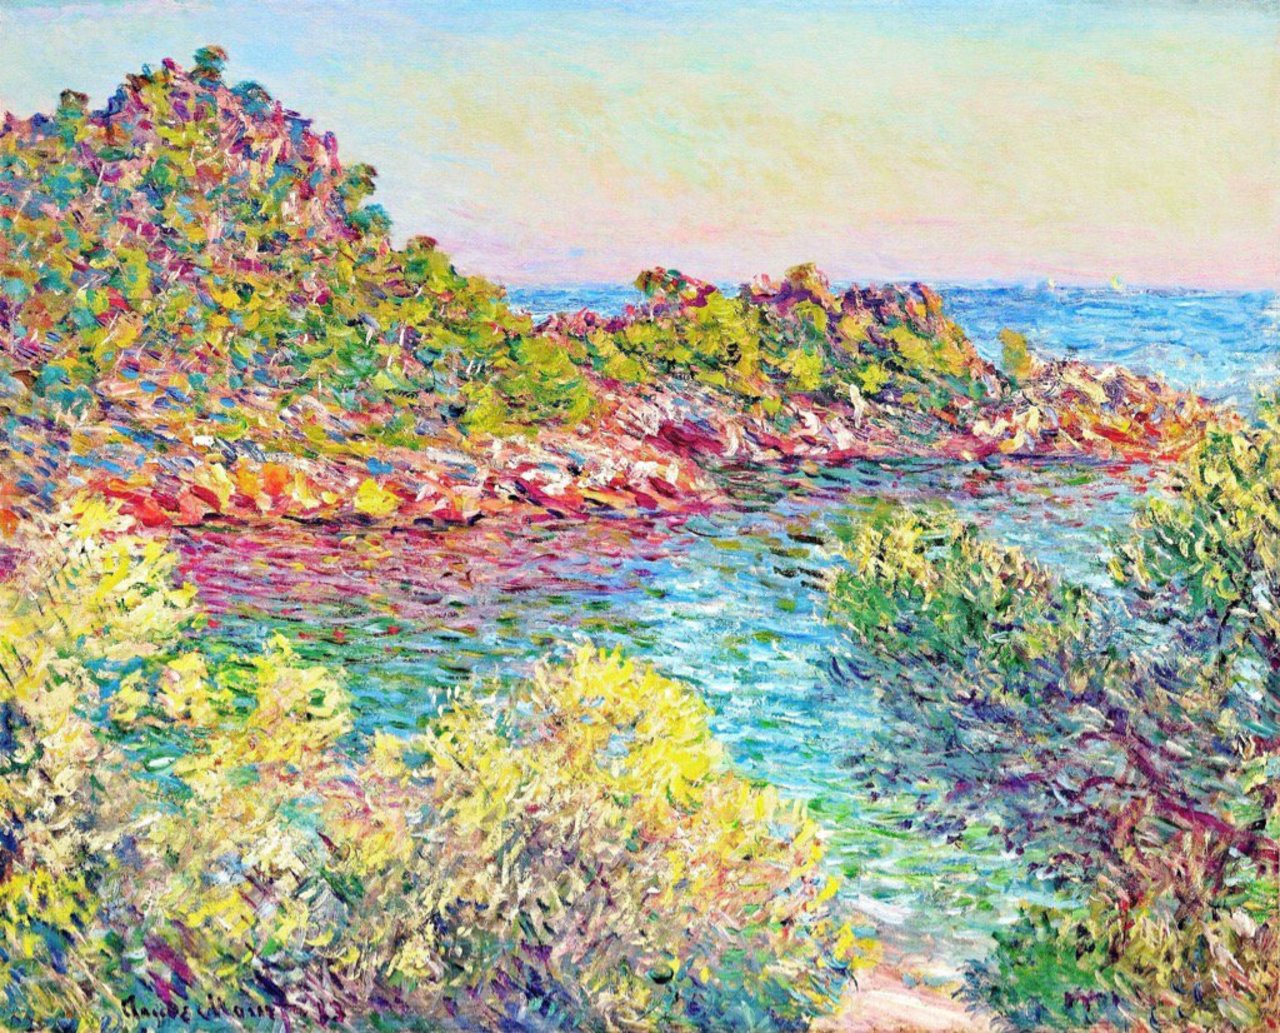 Landscape near Montecarlo #Monet #art 1883 https://t.co/U99XA5JGPw